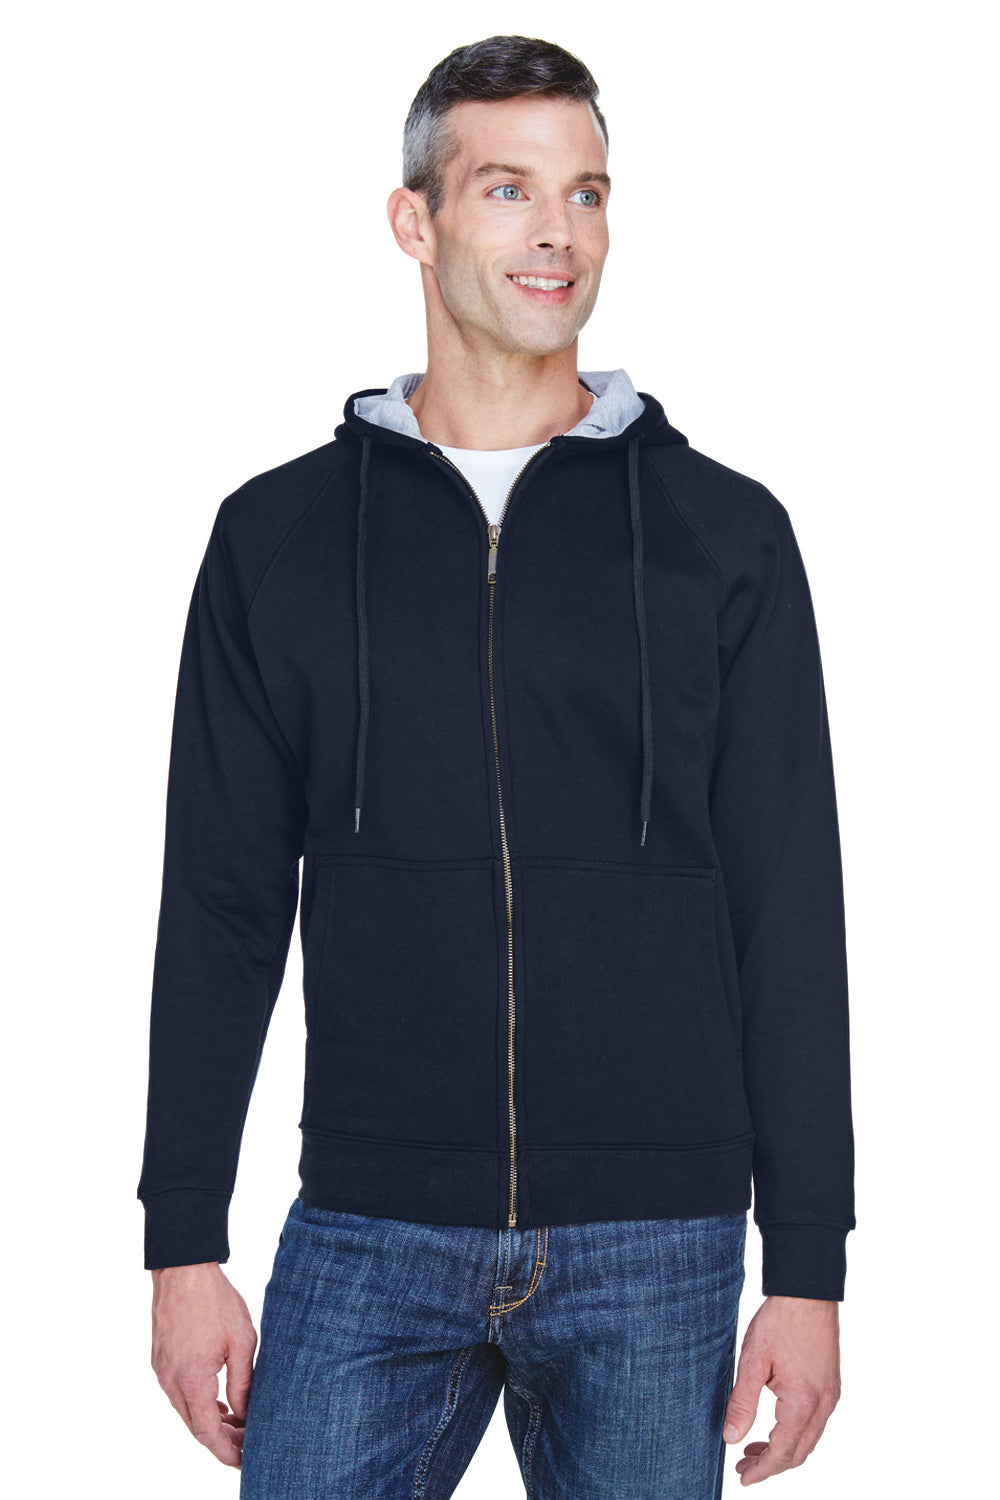 UltraClub 8463 Mens Rugged Wear Water Resistant Fleece Full Zip Hooded Sweatshirt Hoodie Navy Blue Front